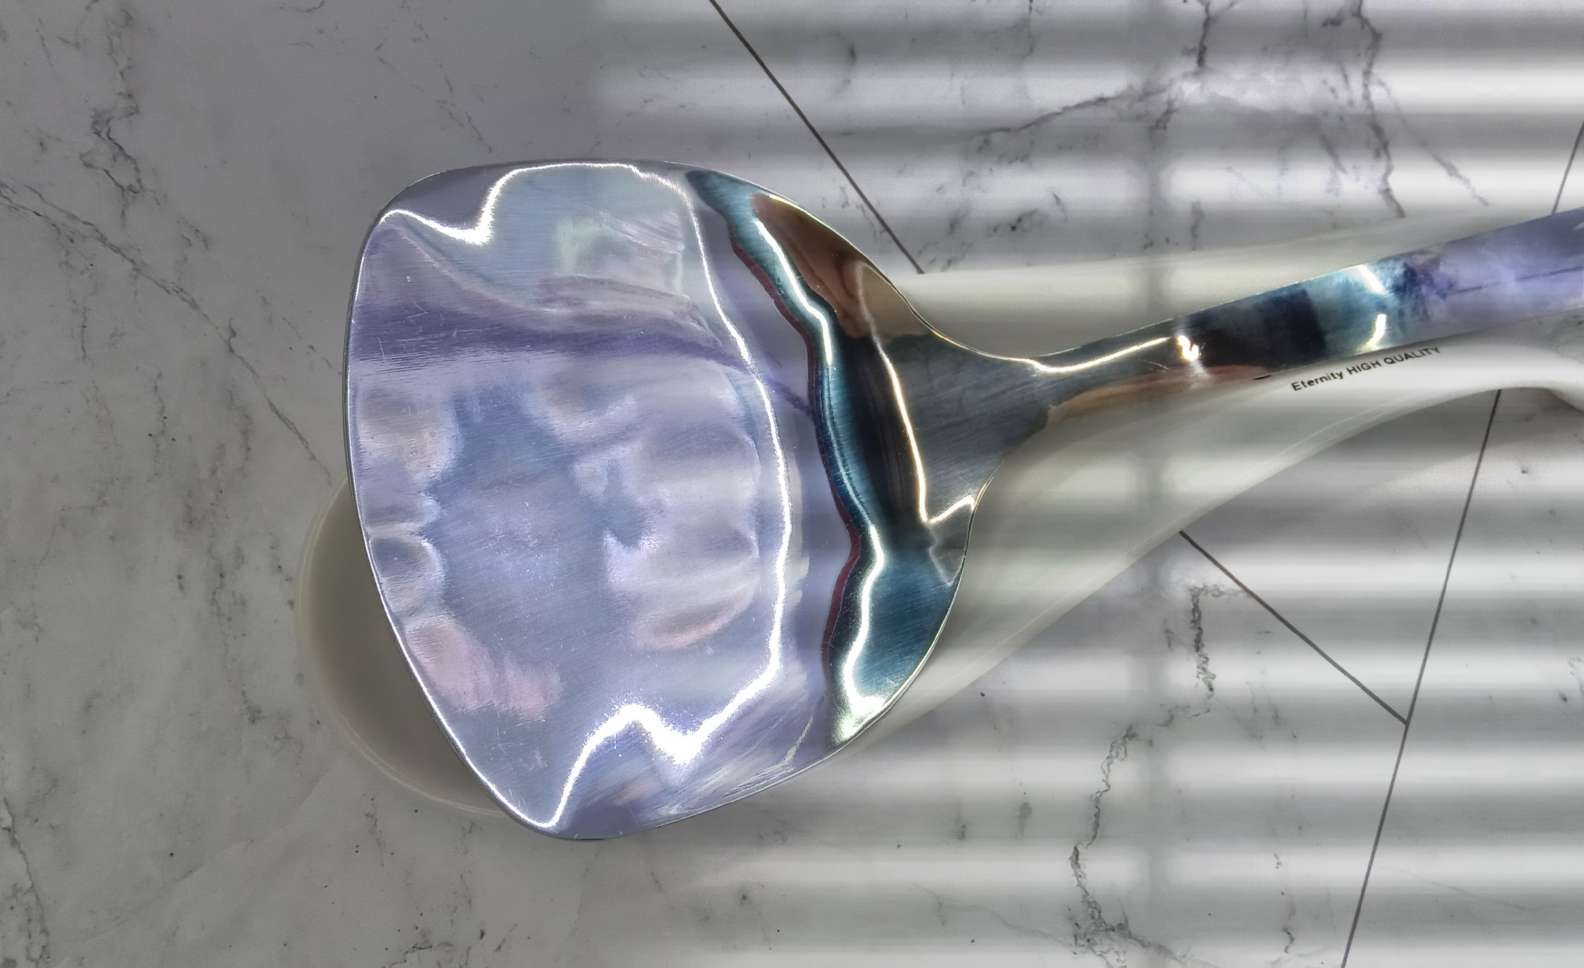 Spoon holder 抹茶绿刀叉陶瓷勺垫 厨房用厨具锅铲垫细节图